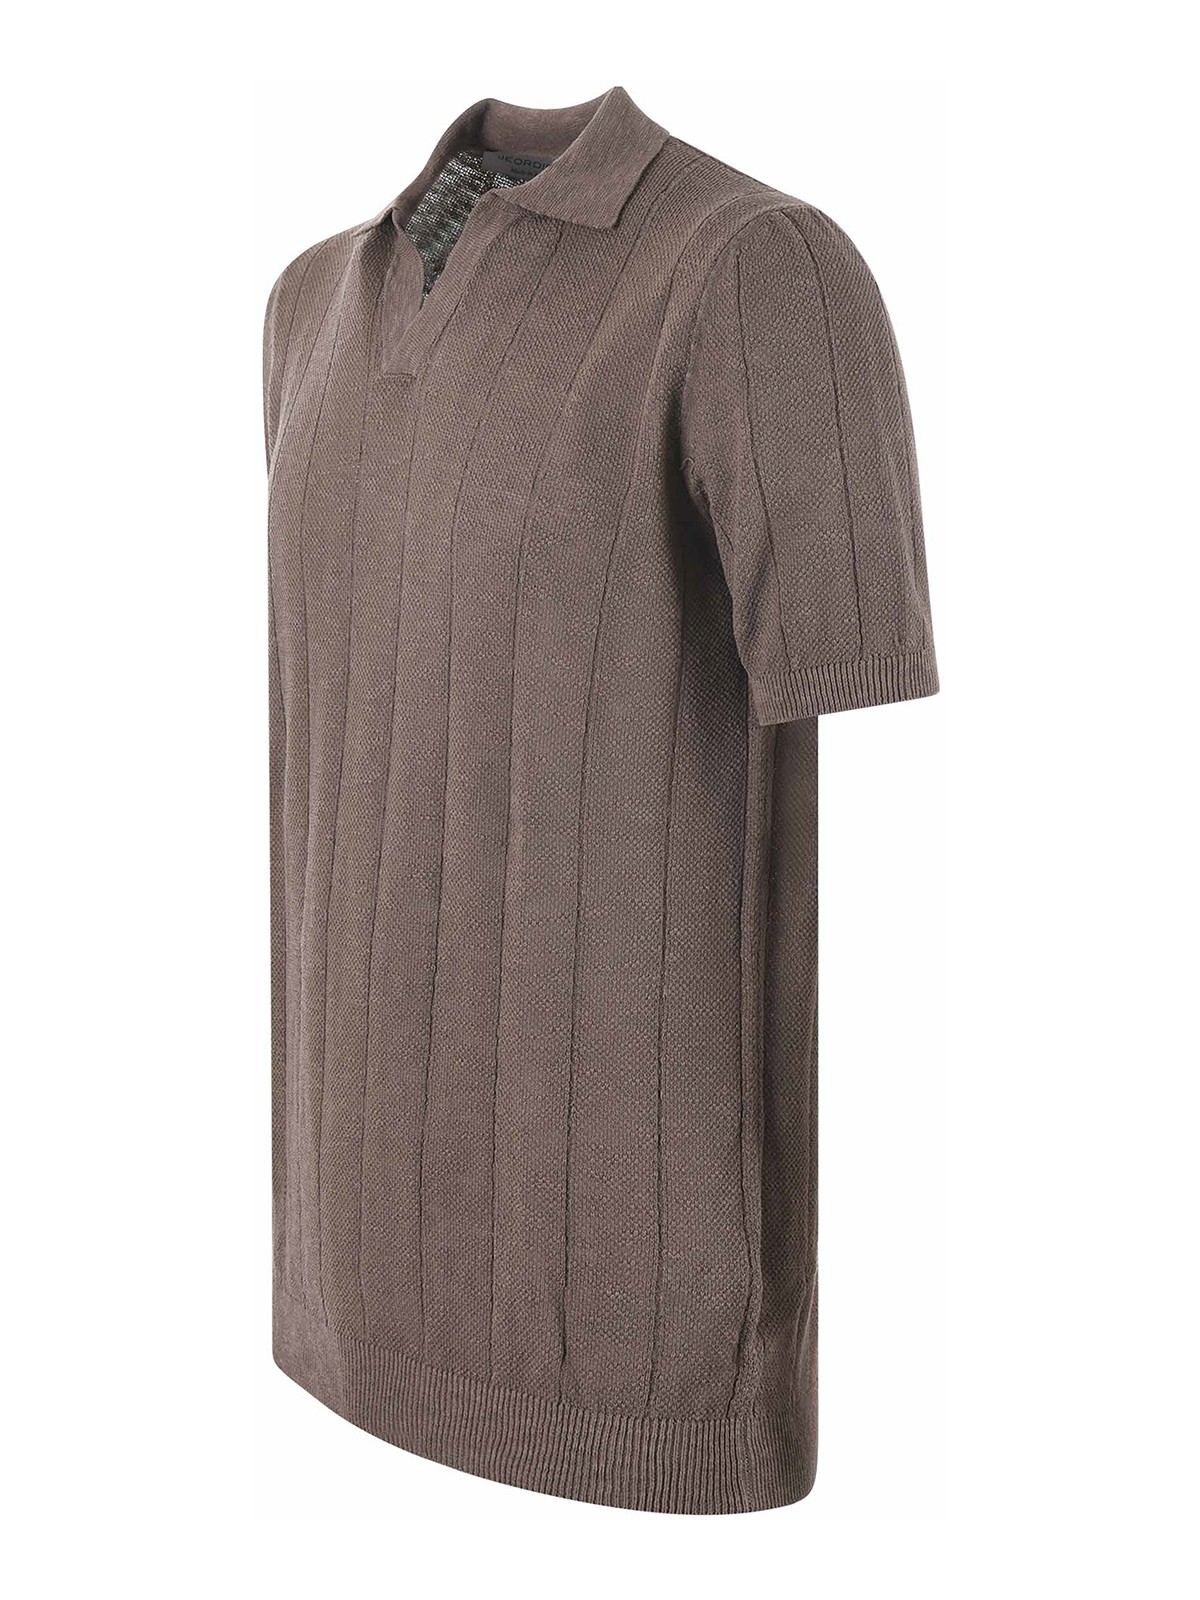 Shop Jeordie's Jeordies Polo Shirt In Brown